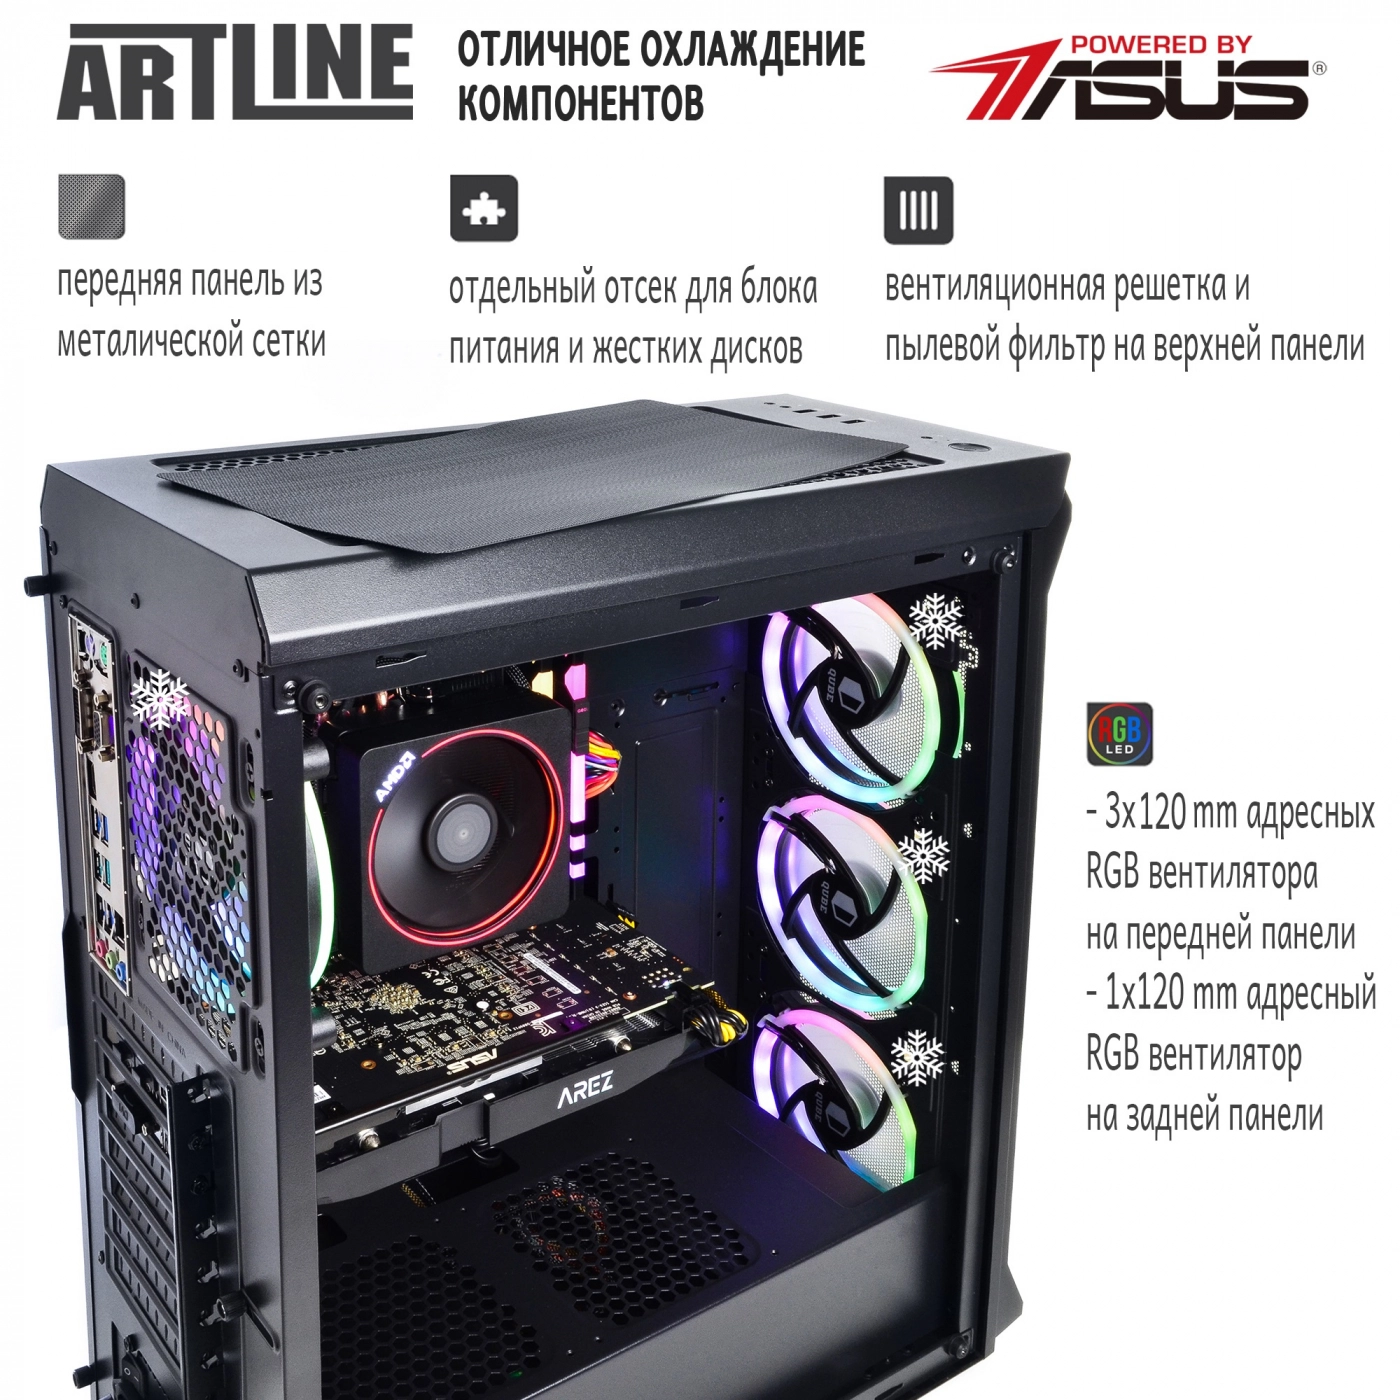 Купить Компьютер ARTLINE Gaming X68v03 - фото 2